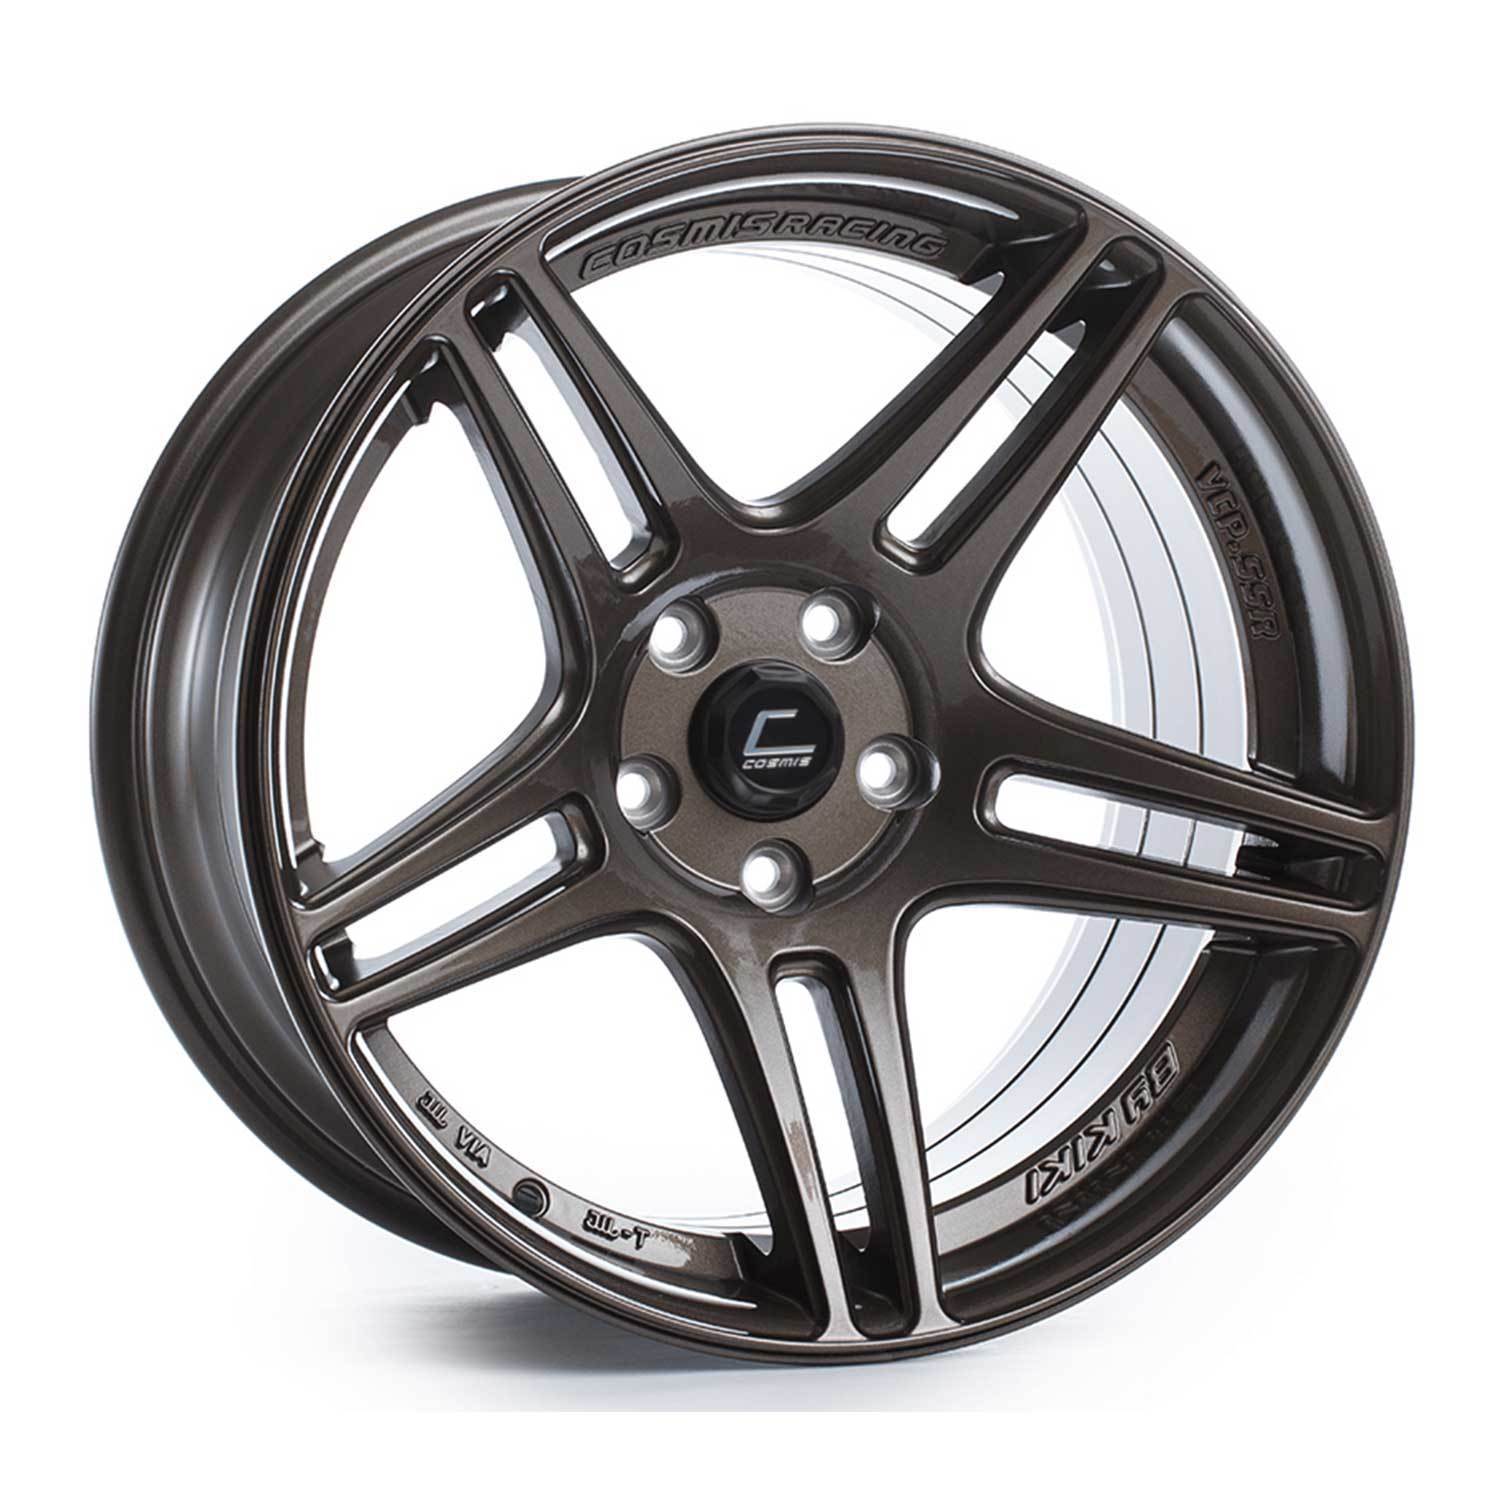 Cosmis Racing S5R Wheel Bronze 18x10.5 +20mm 5x114.3